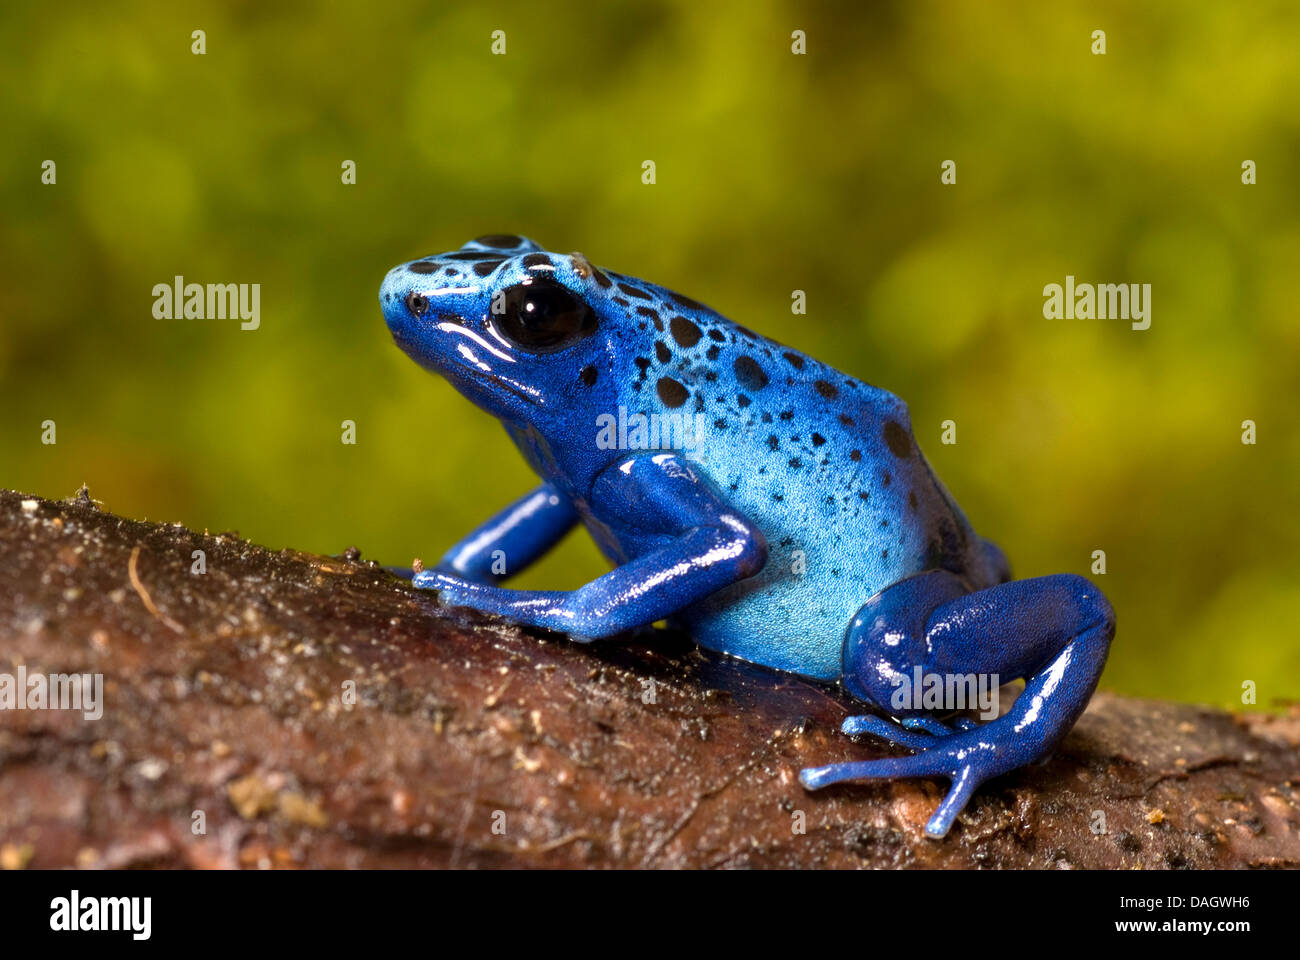 La teinture bleue-poison arrow frog, Blue poison frog (Dendrobates tinctorius azureus), blue morph Azureus assis sur un tronc d'arbre Banque D'Images